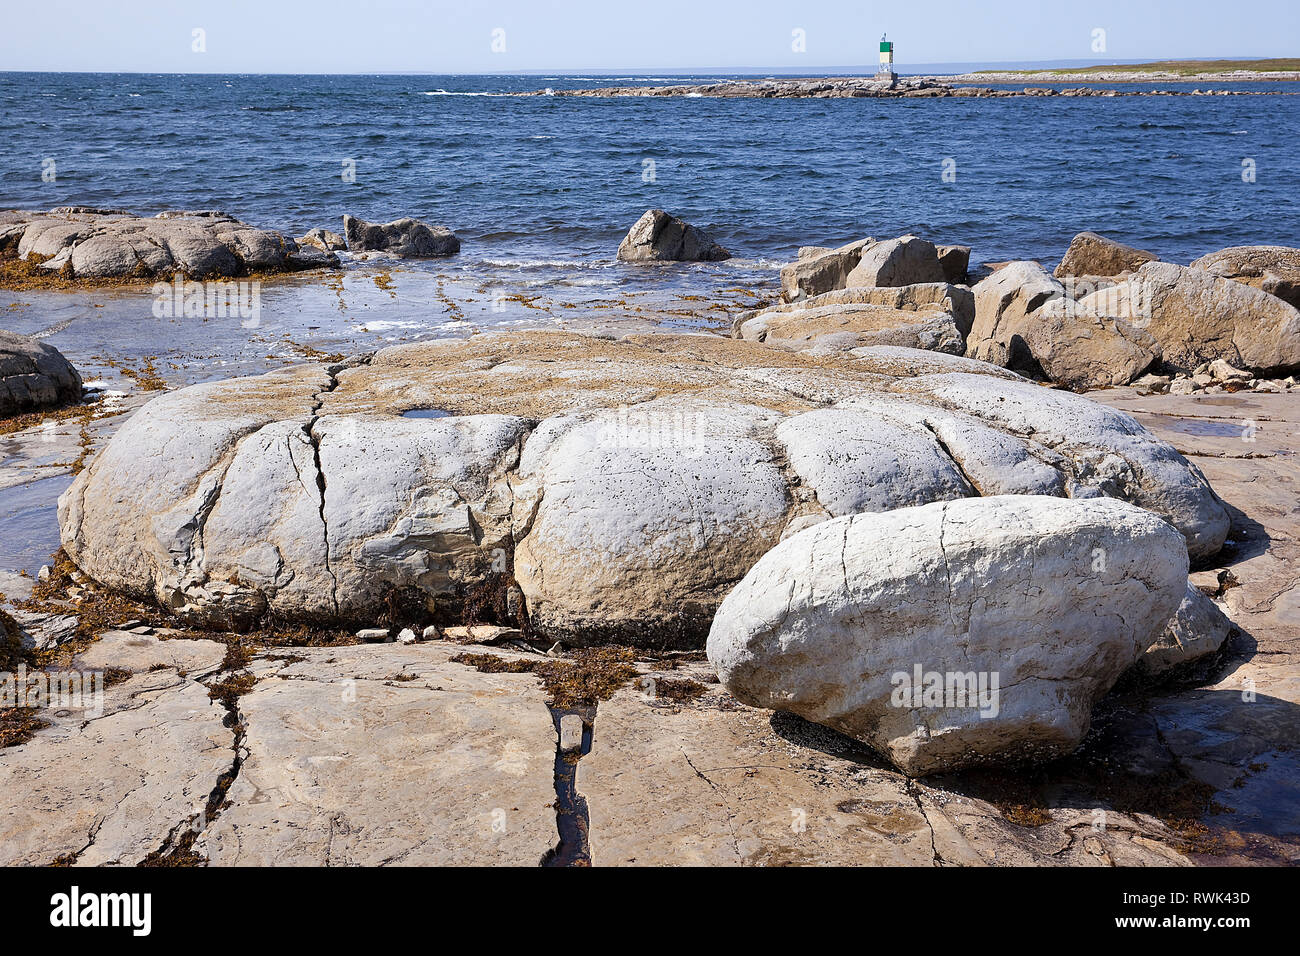 En forme de petit pain géant fossilisé, organisme qui se développent dans une zone de marée près de Flower's Cove, Terre-Neuve, quelque 650 millions d'années. Flower's Cove, dans l'ouest de Terre-Neuve, Canada Banque D'Images